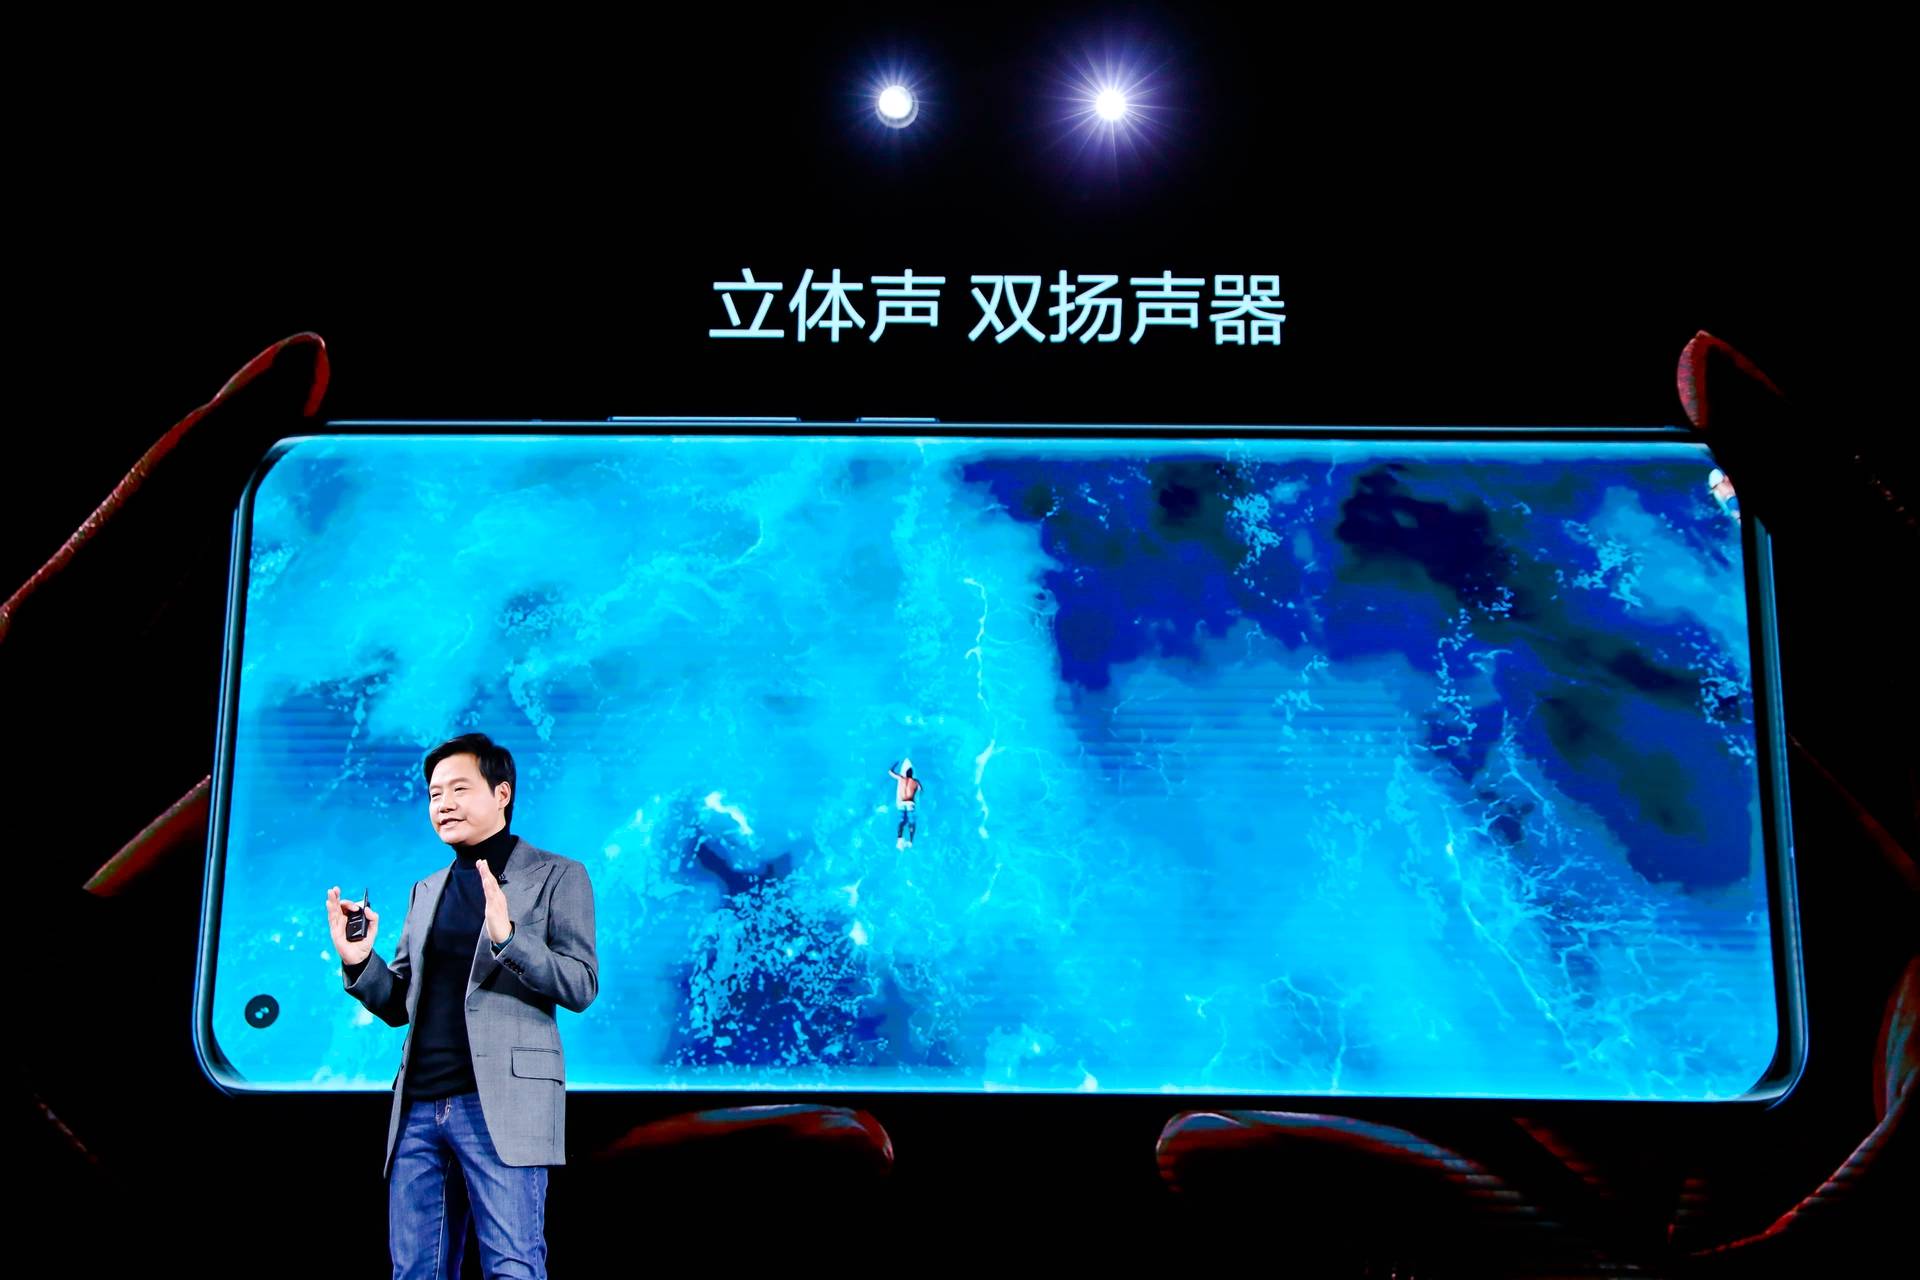 1921609159793 .pic hd - Conferenza Xiaomi Mi 11: Mi 11 offre le prestazioni più forti e lo schermo migliore, MIUI 12.5 è il corpo completo